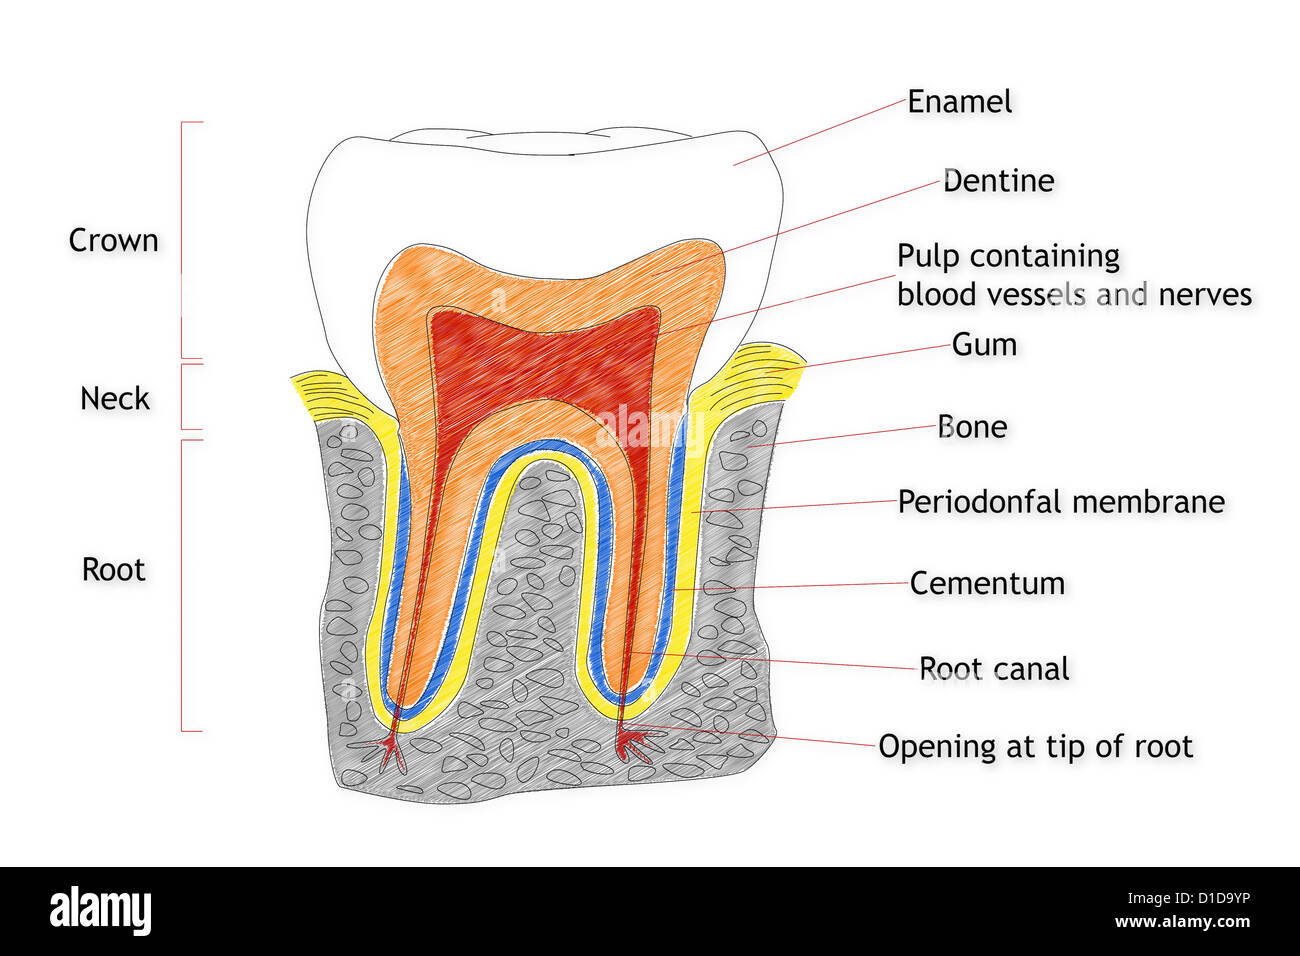 Модель строения зуба